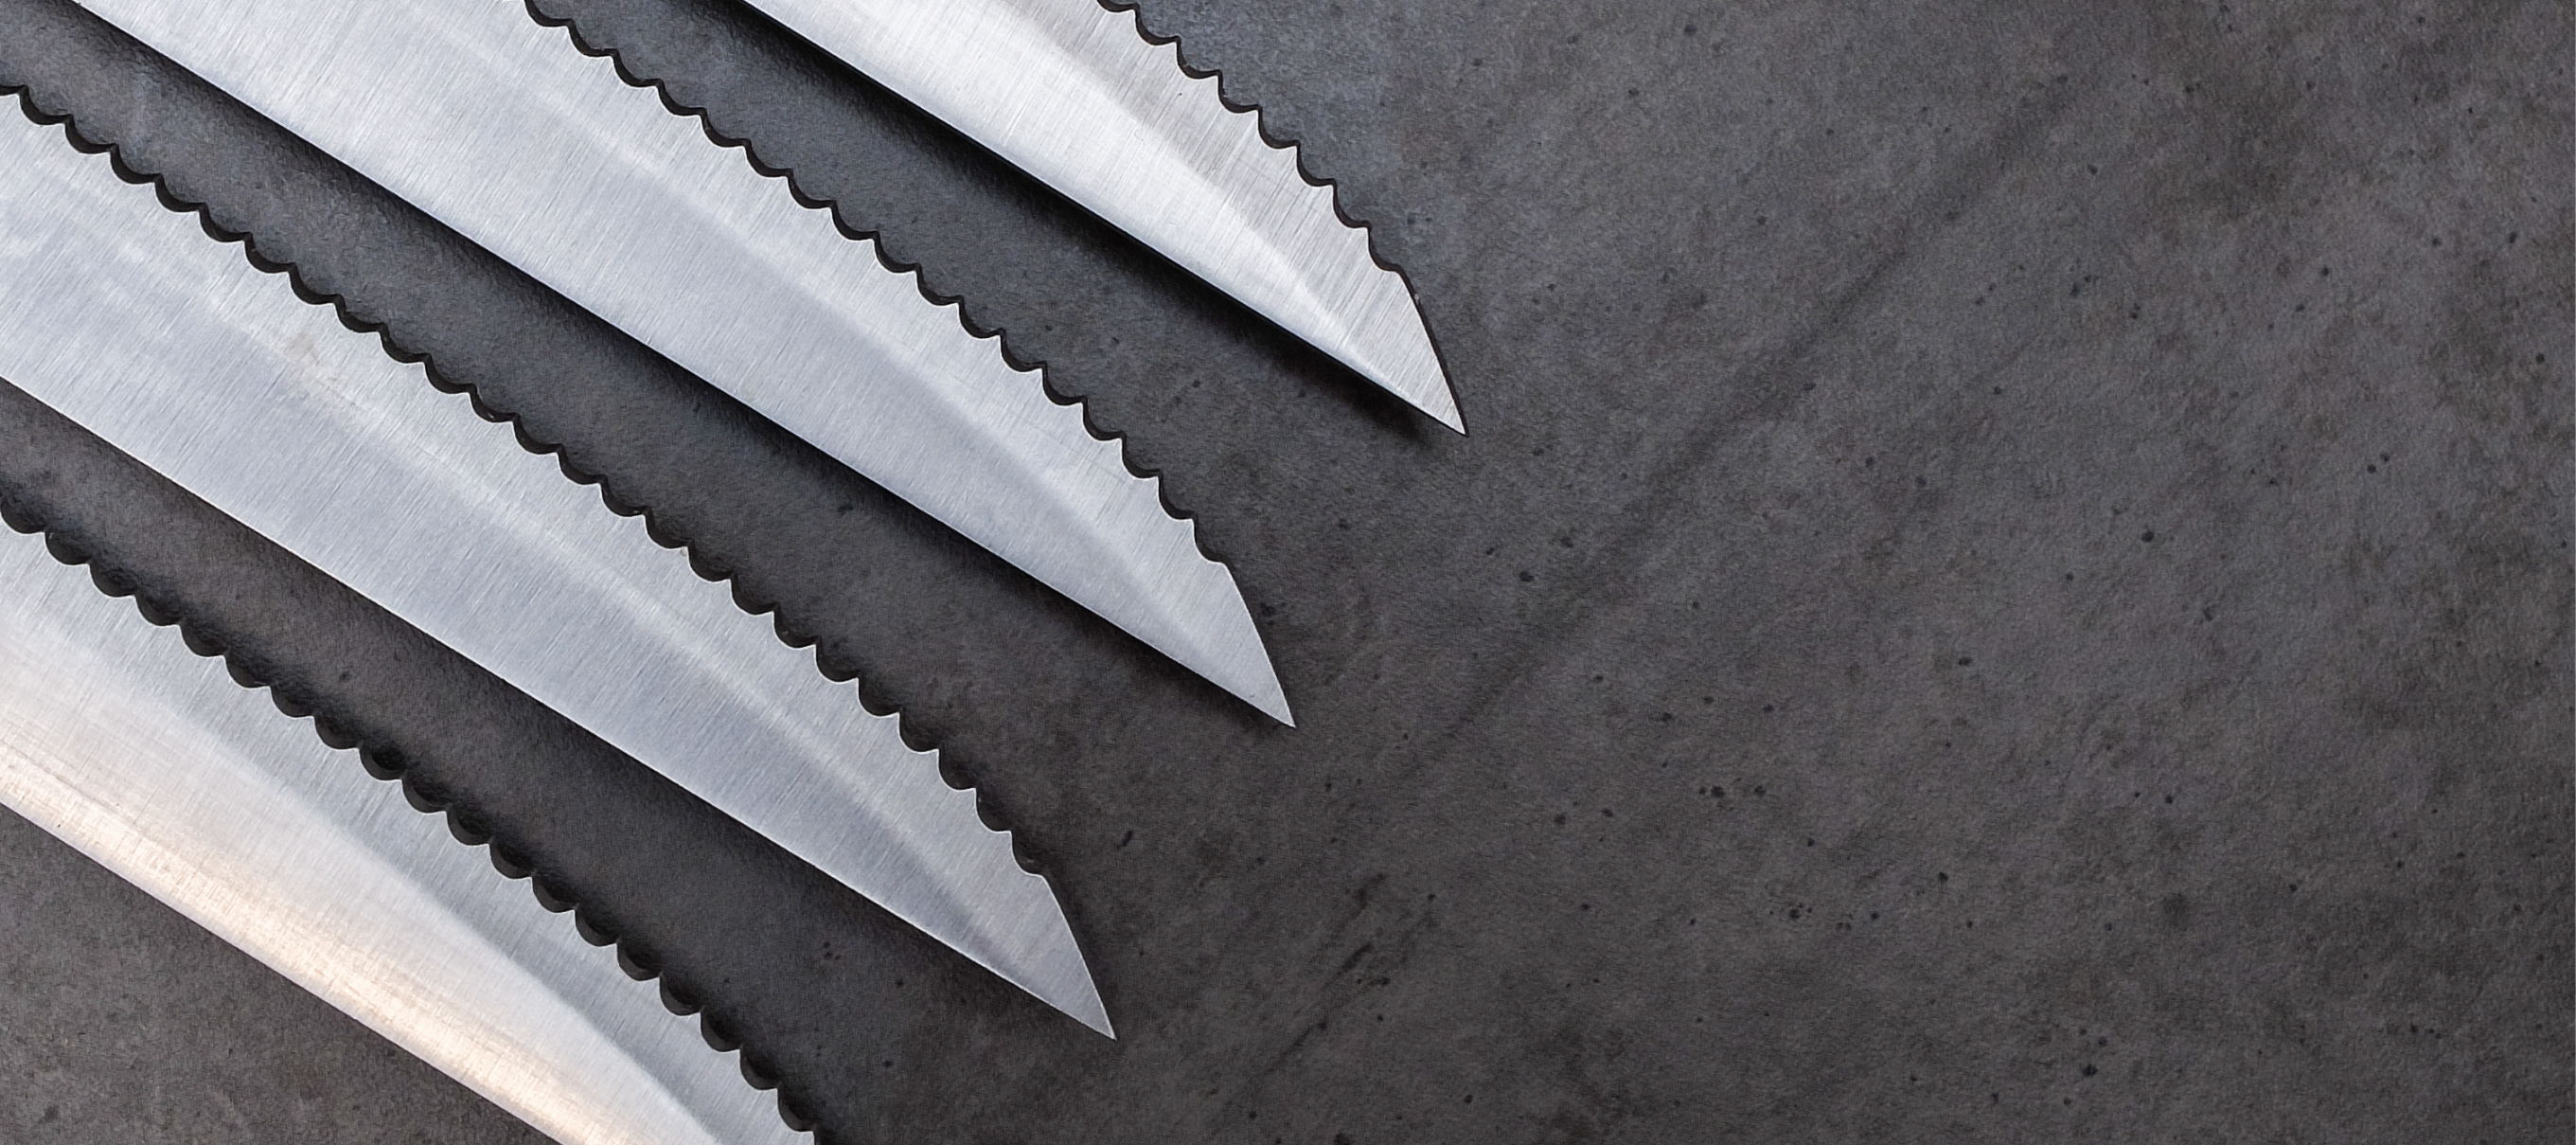 Comment affiner les lames de couteau électriques – santokuknives